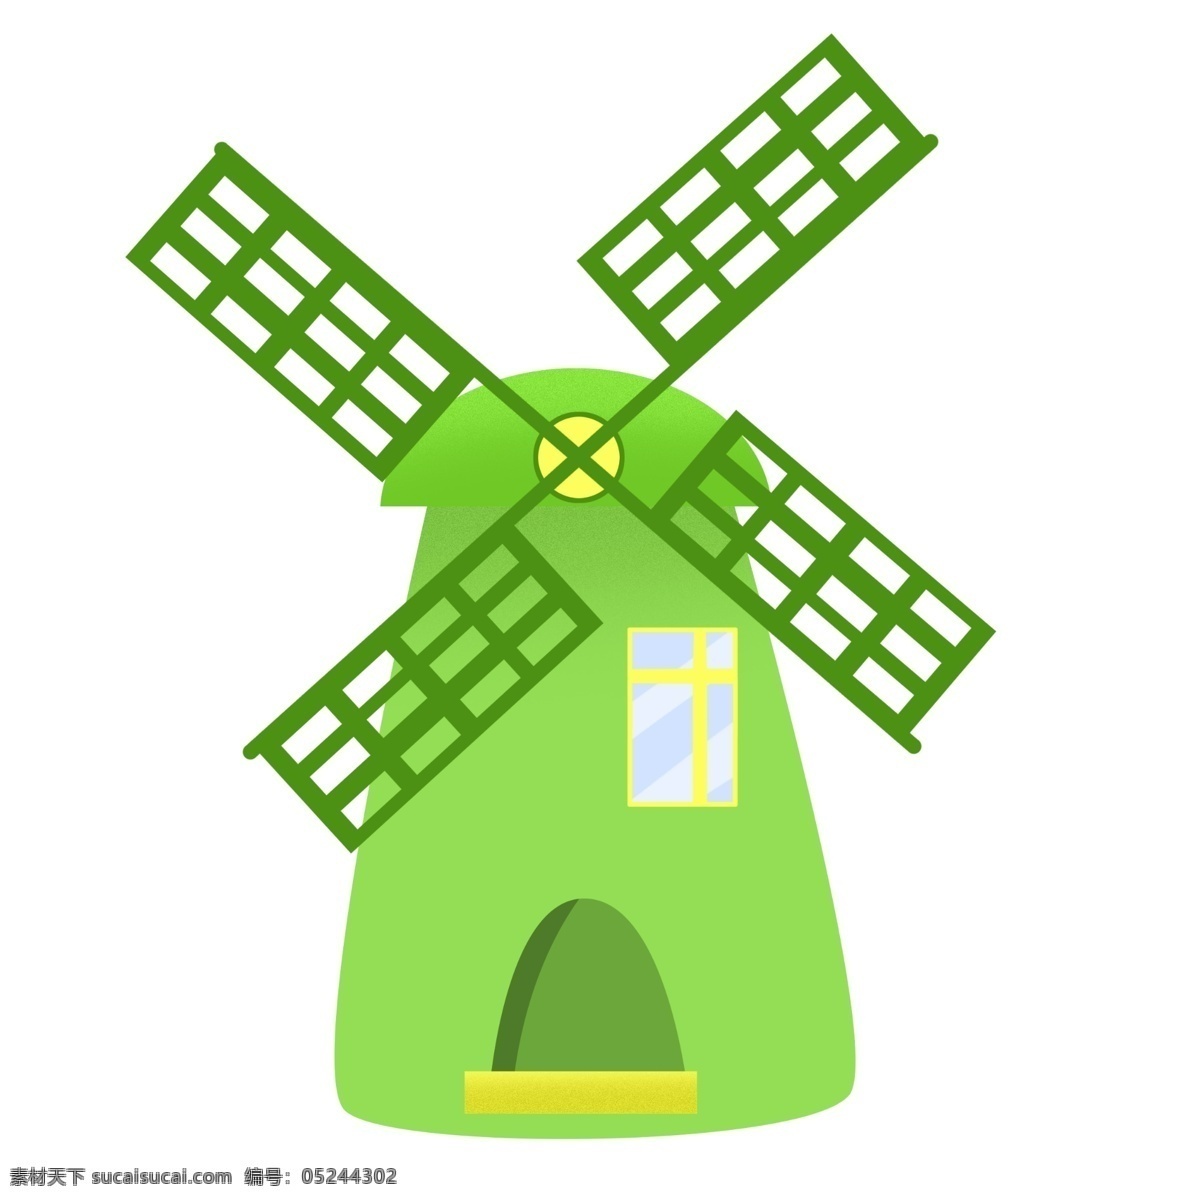 卡通 环保 风车 插画 大风车 绿色房子 风车插画 卡通风车 环保风车插画 绿色环保 风能 绿色